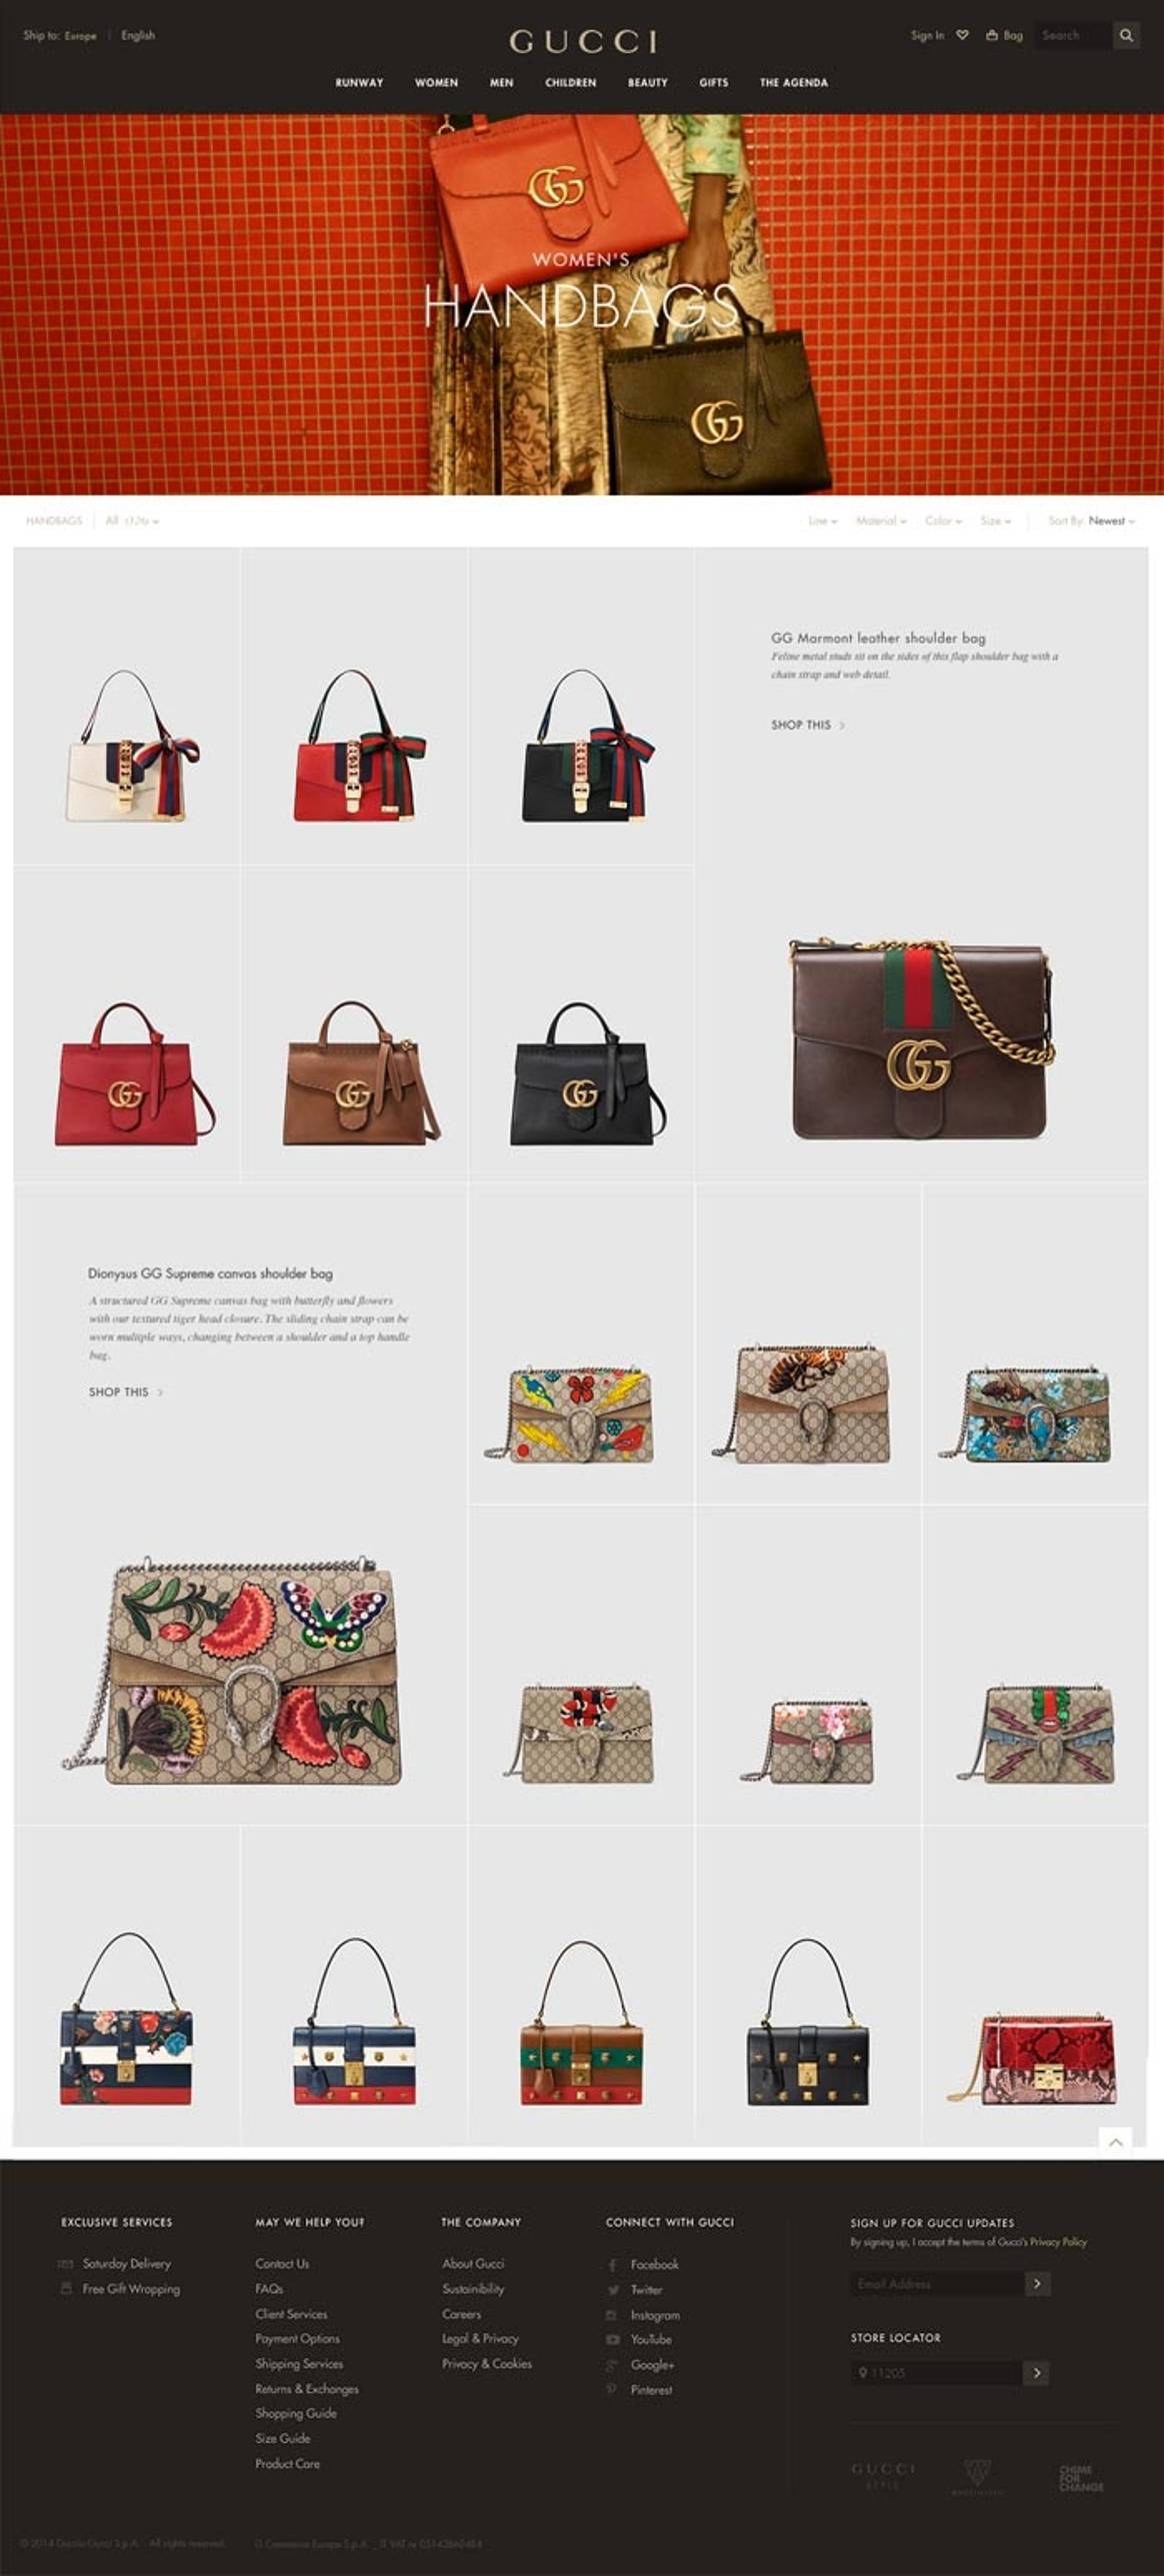 Vernieuwde e-commerce aanpak voor Gucci